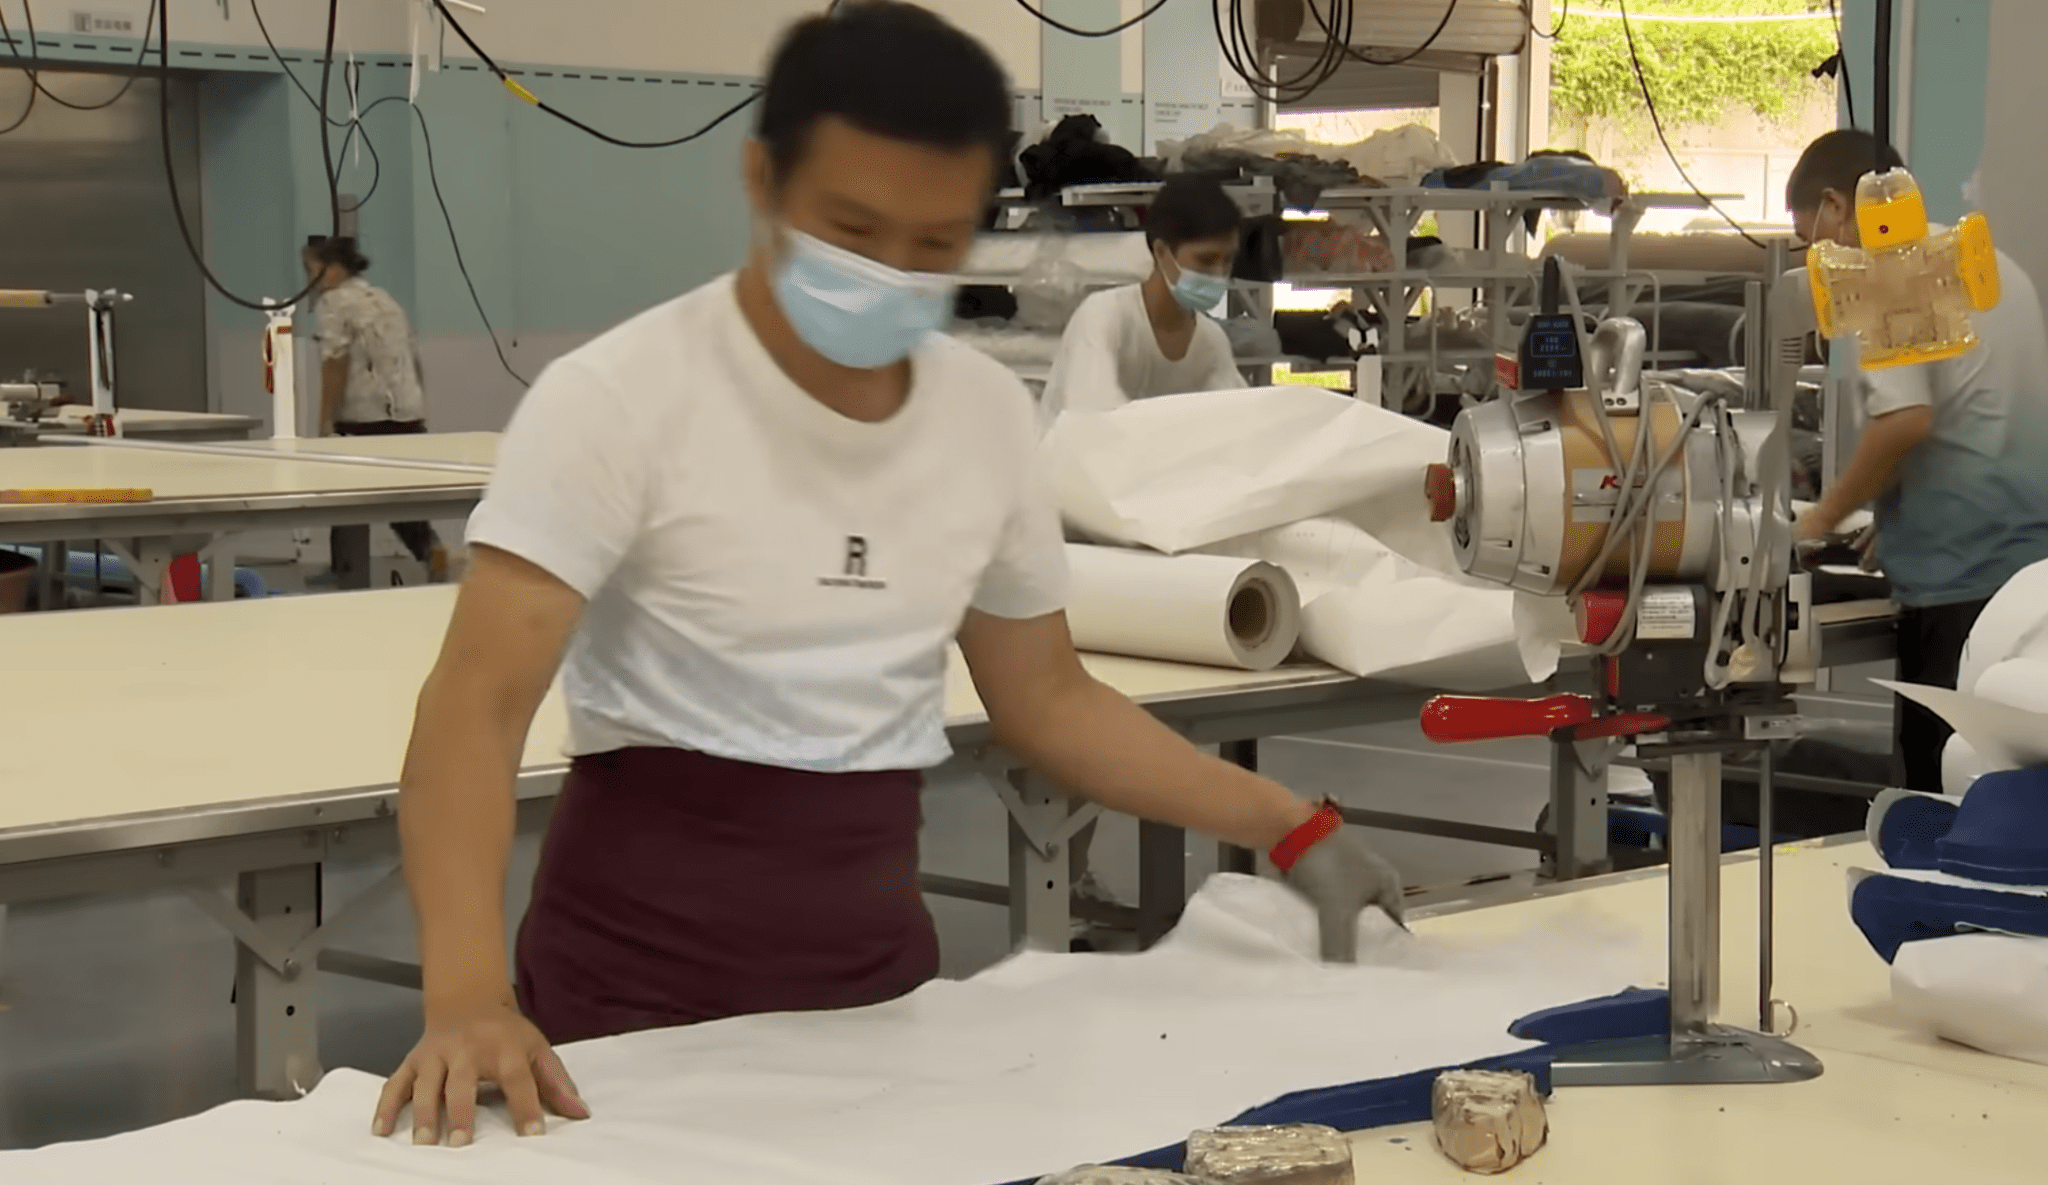 Îmbrăcăminte fabricată în China